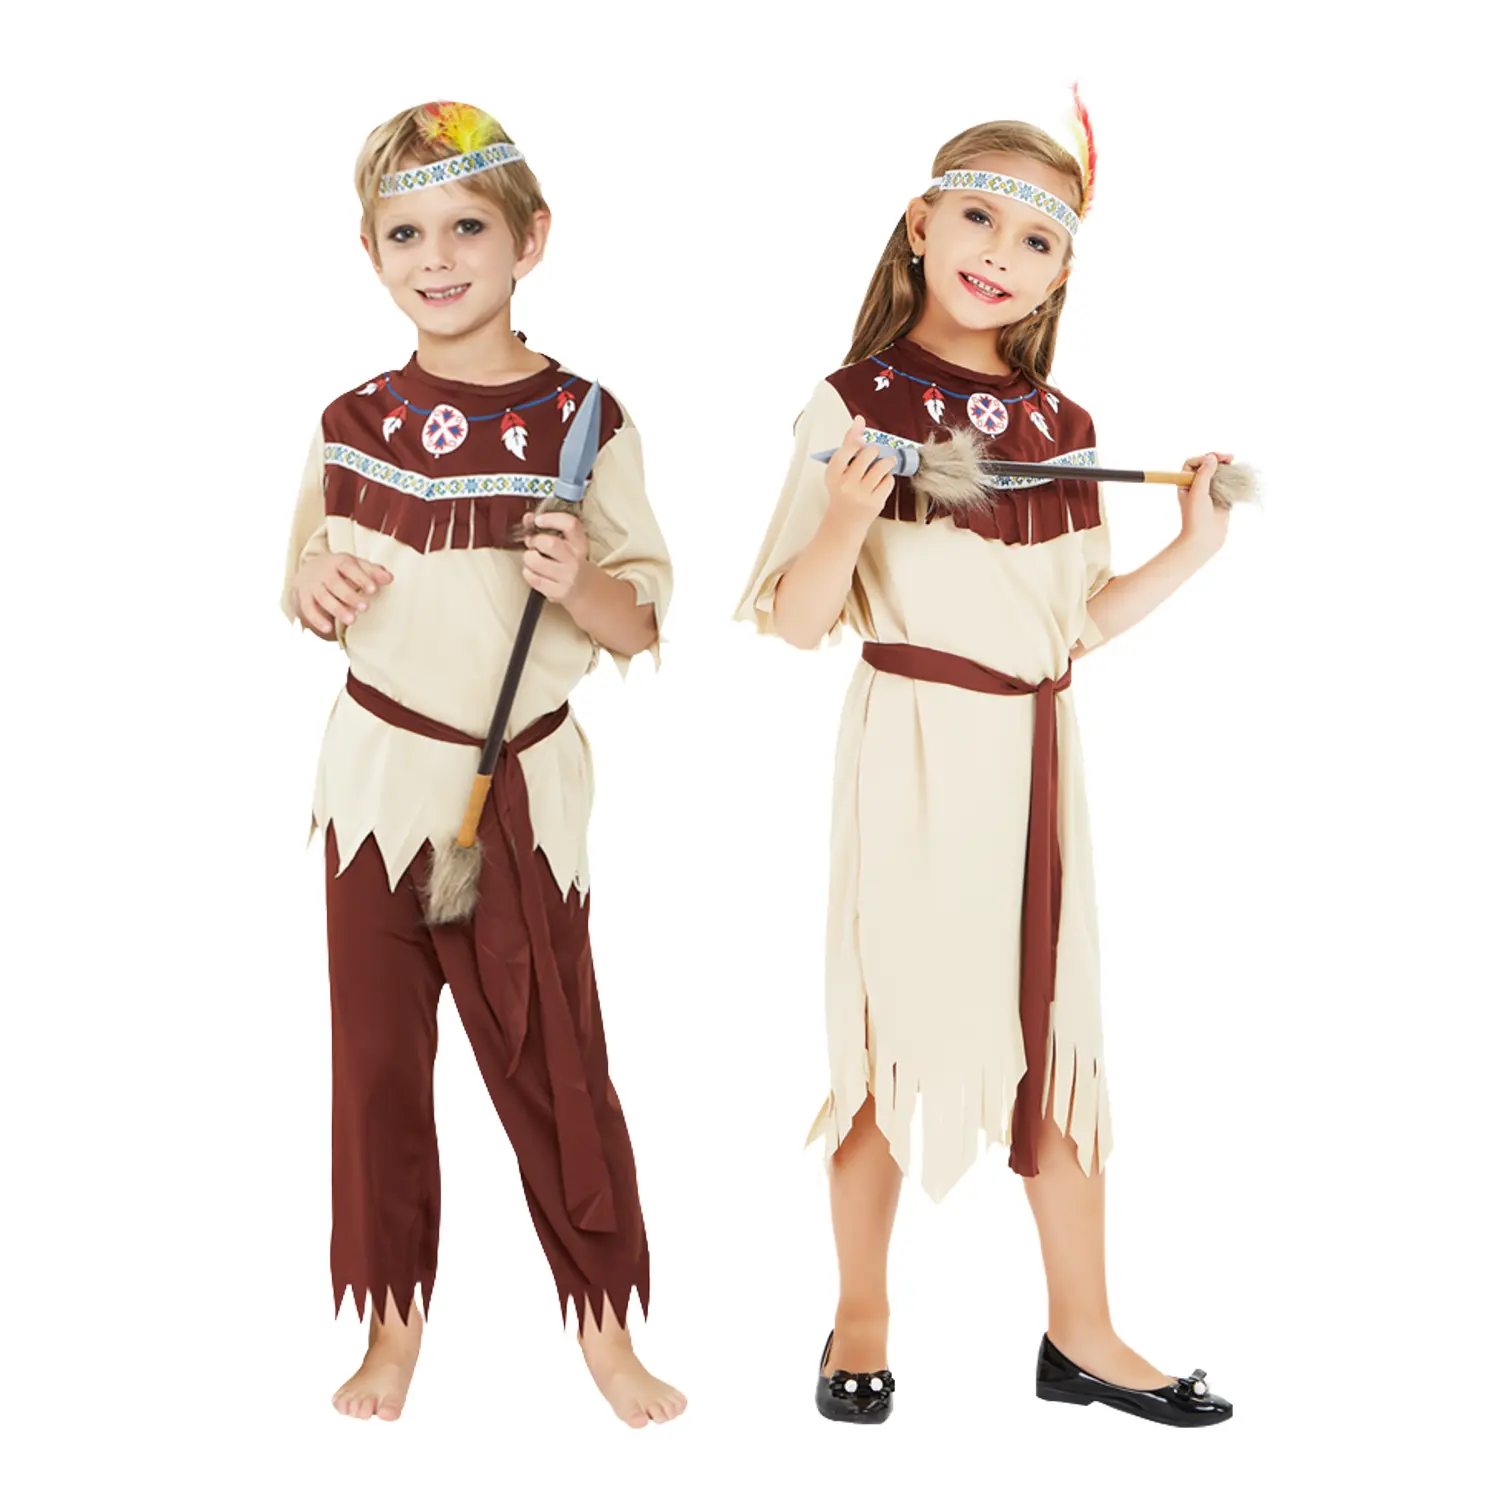 Costume da bambino guerriero indiano nativo per bambini ragazzi ragazze, In diversi stili medio oriente